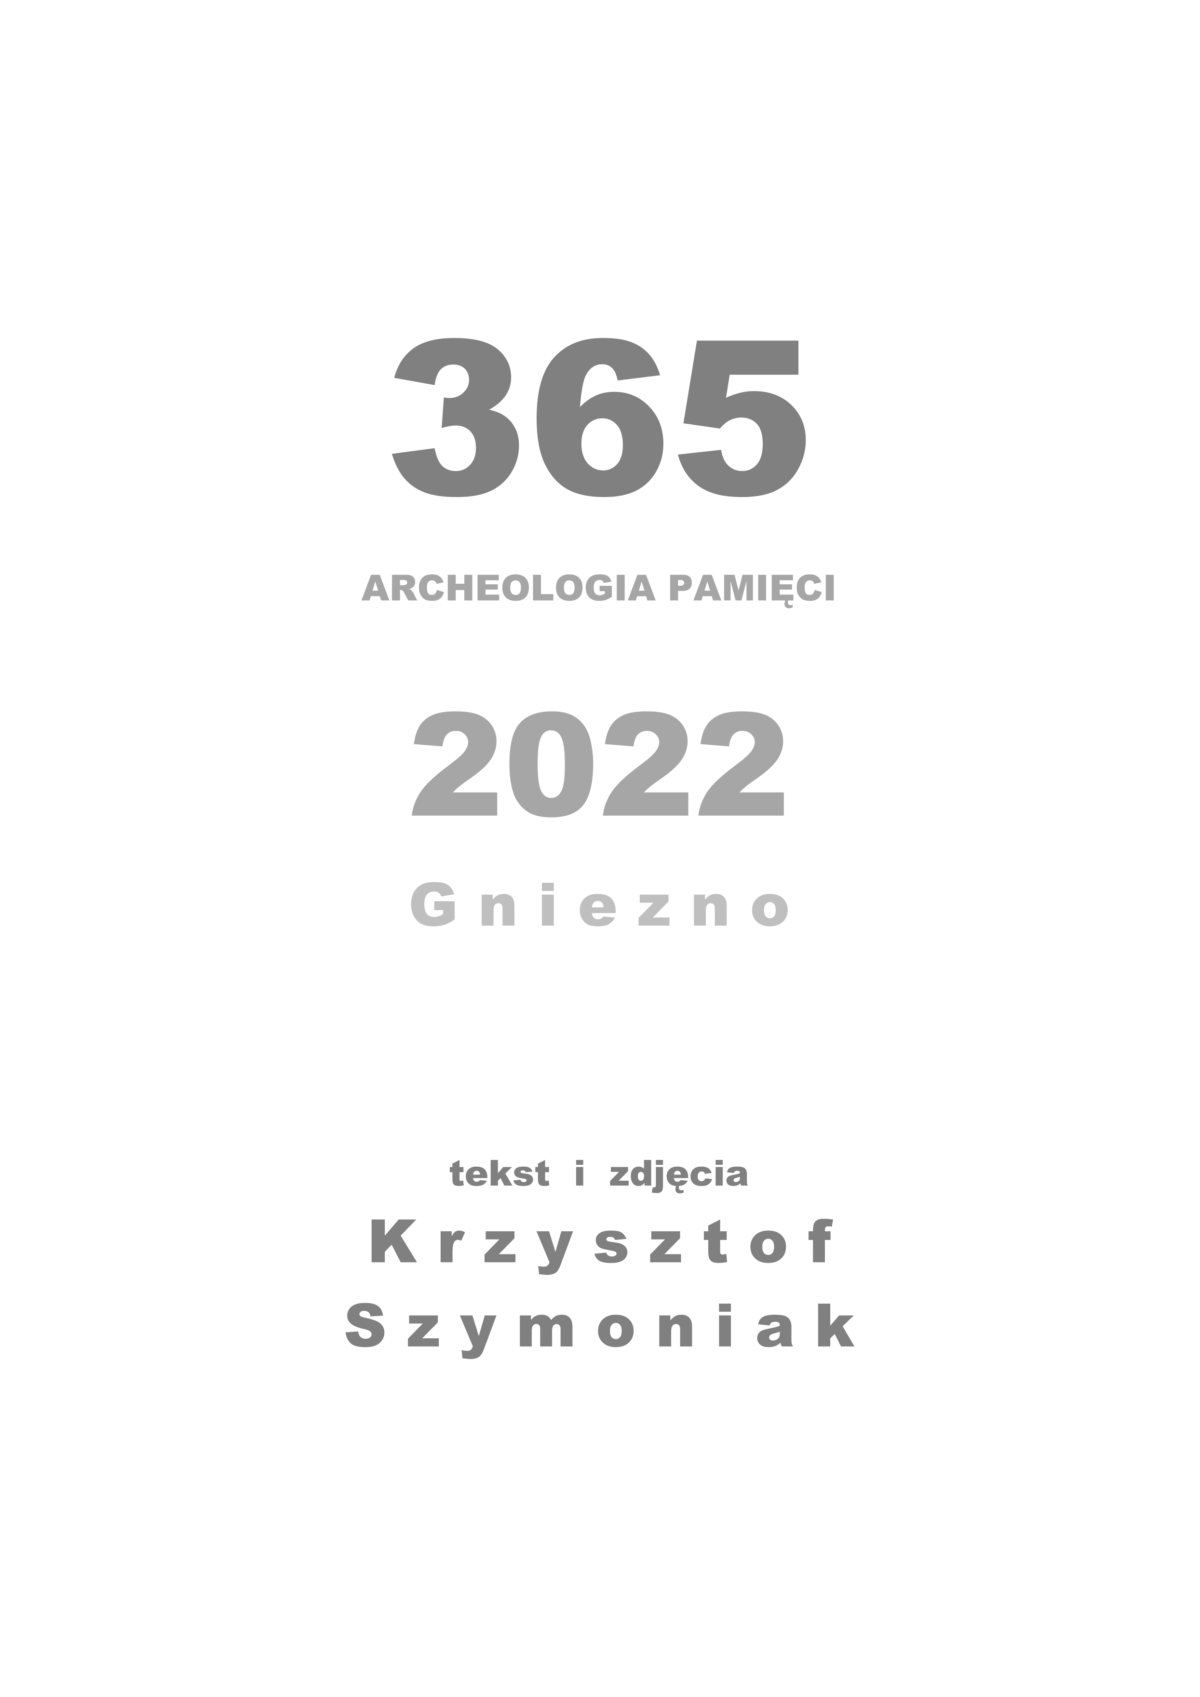 „365. ARCHEOLOGIA PAMIĘCI. GNIEZNO 2022”– dziennik wspomnień Krzysztofa Szymoniaka na naszych stronach